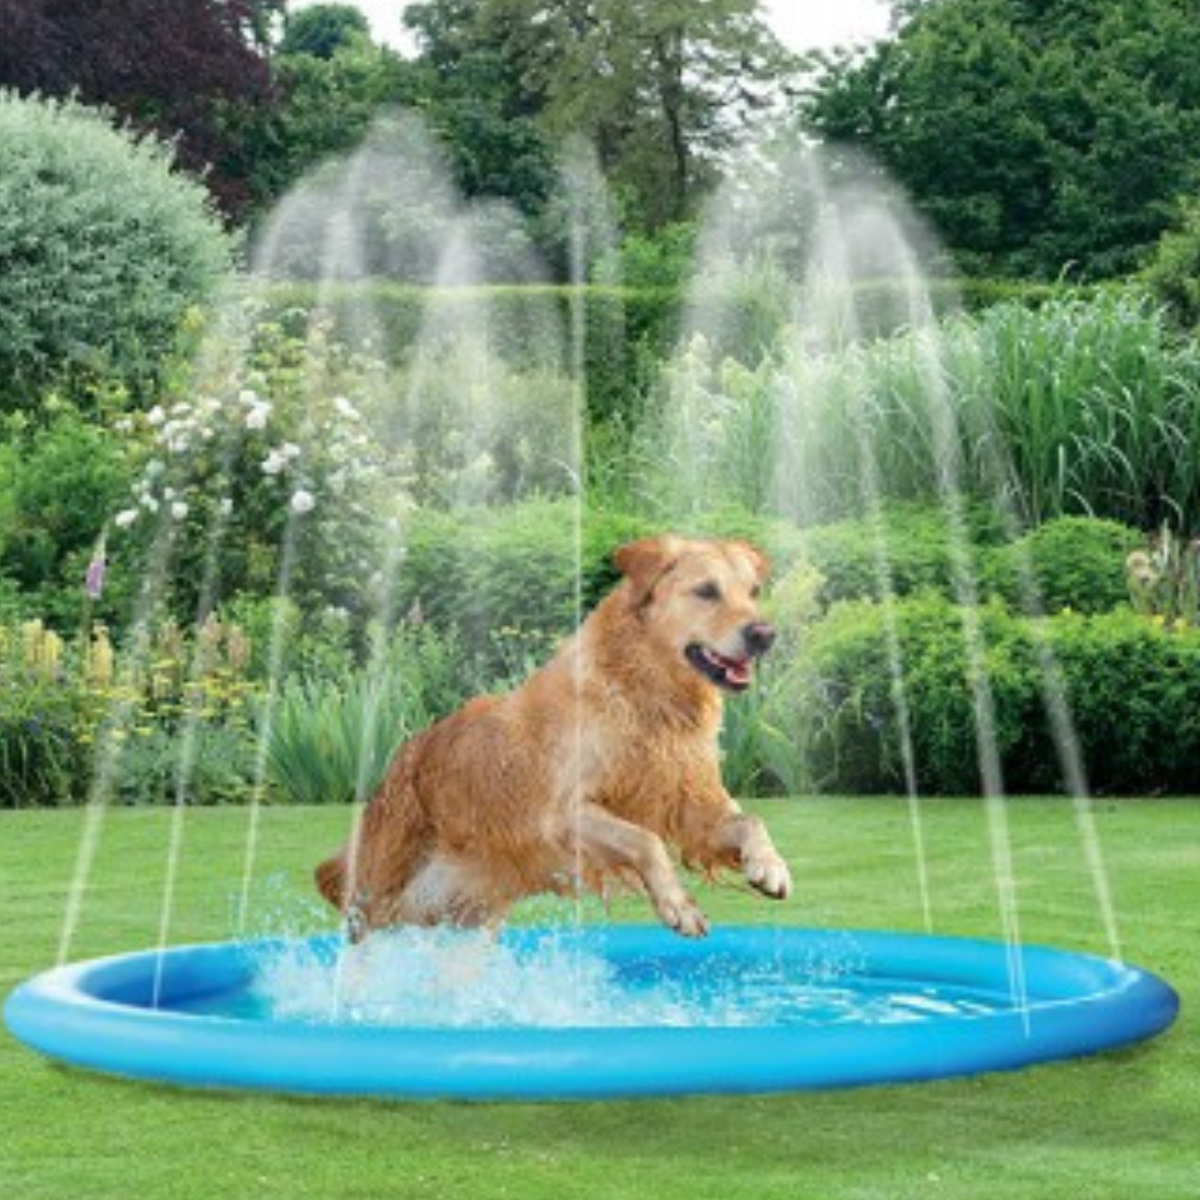 Kingdom Splash Pool & Sprinkler